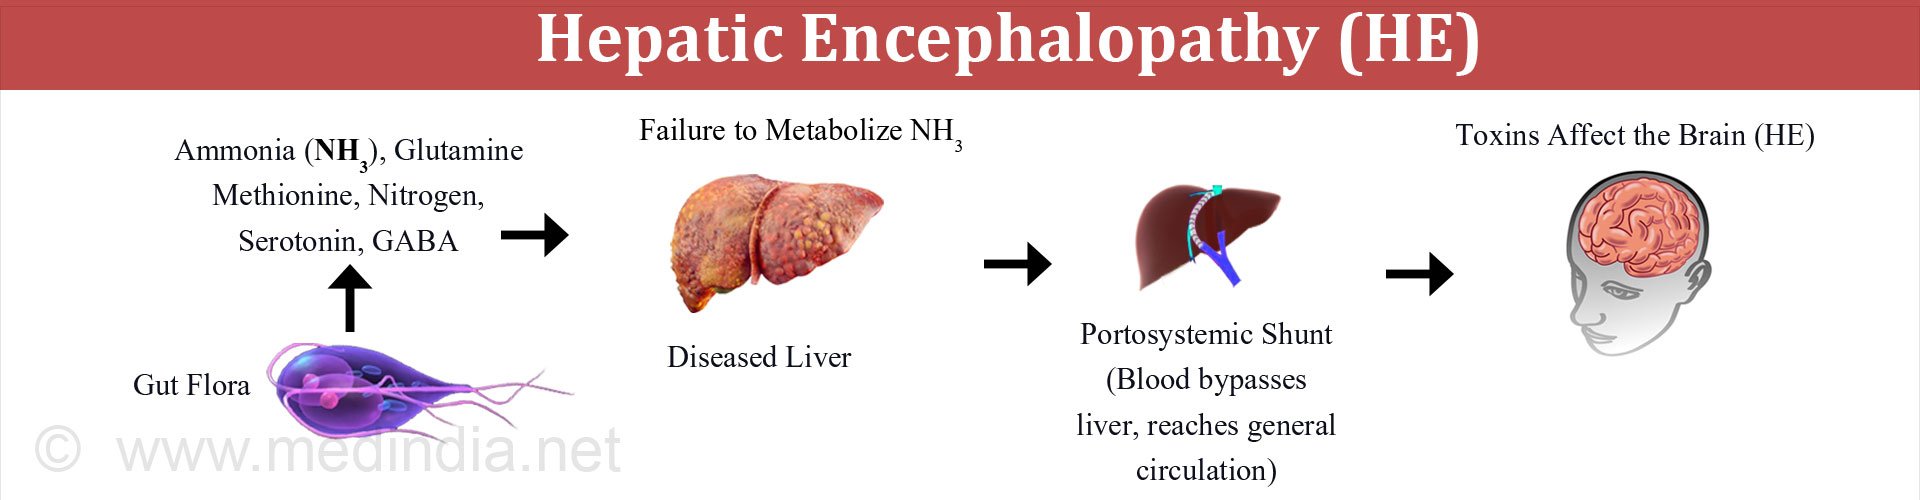 Information on hepatic encephalopathy